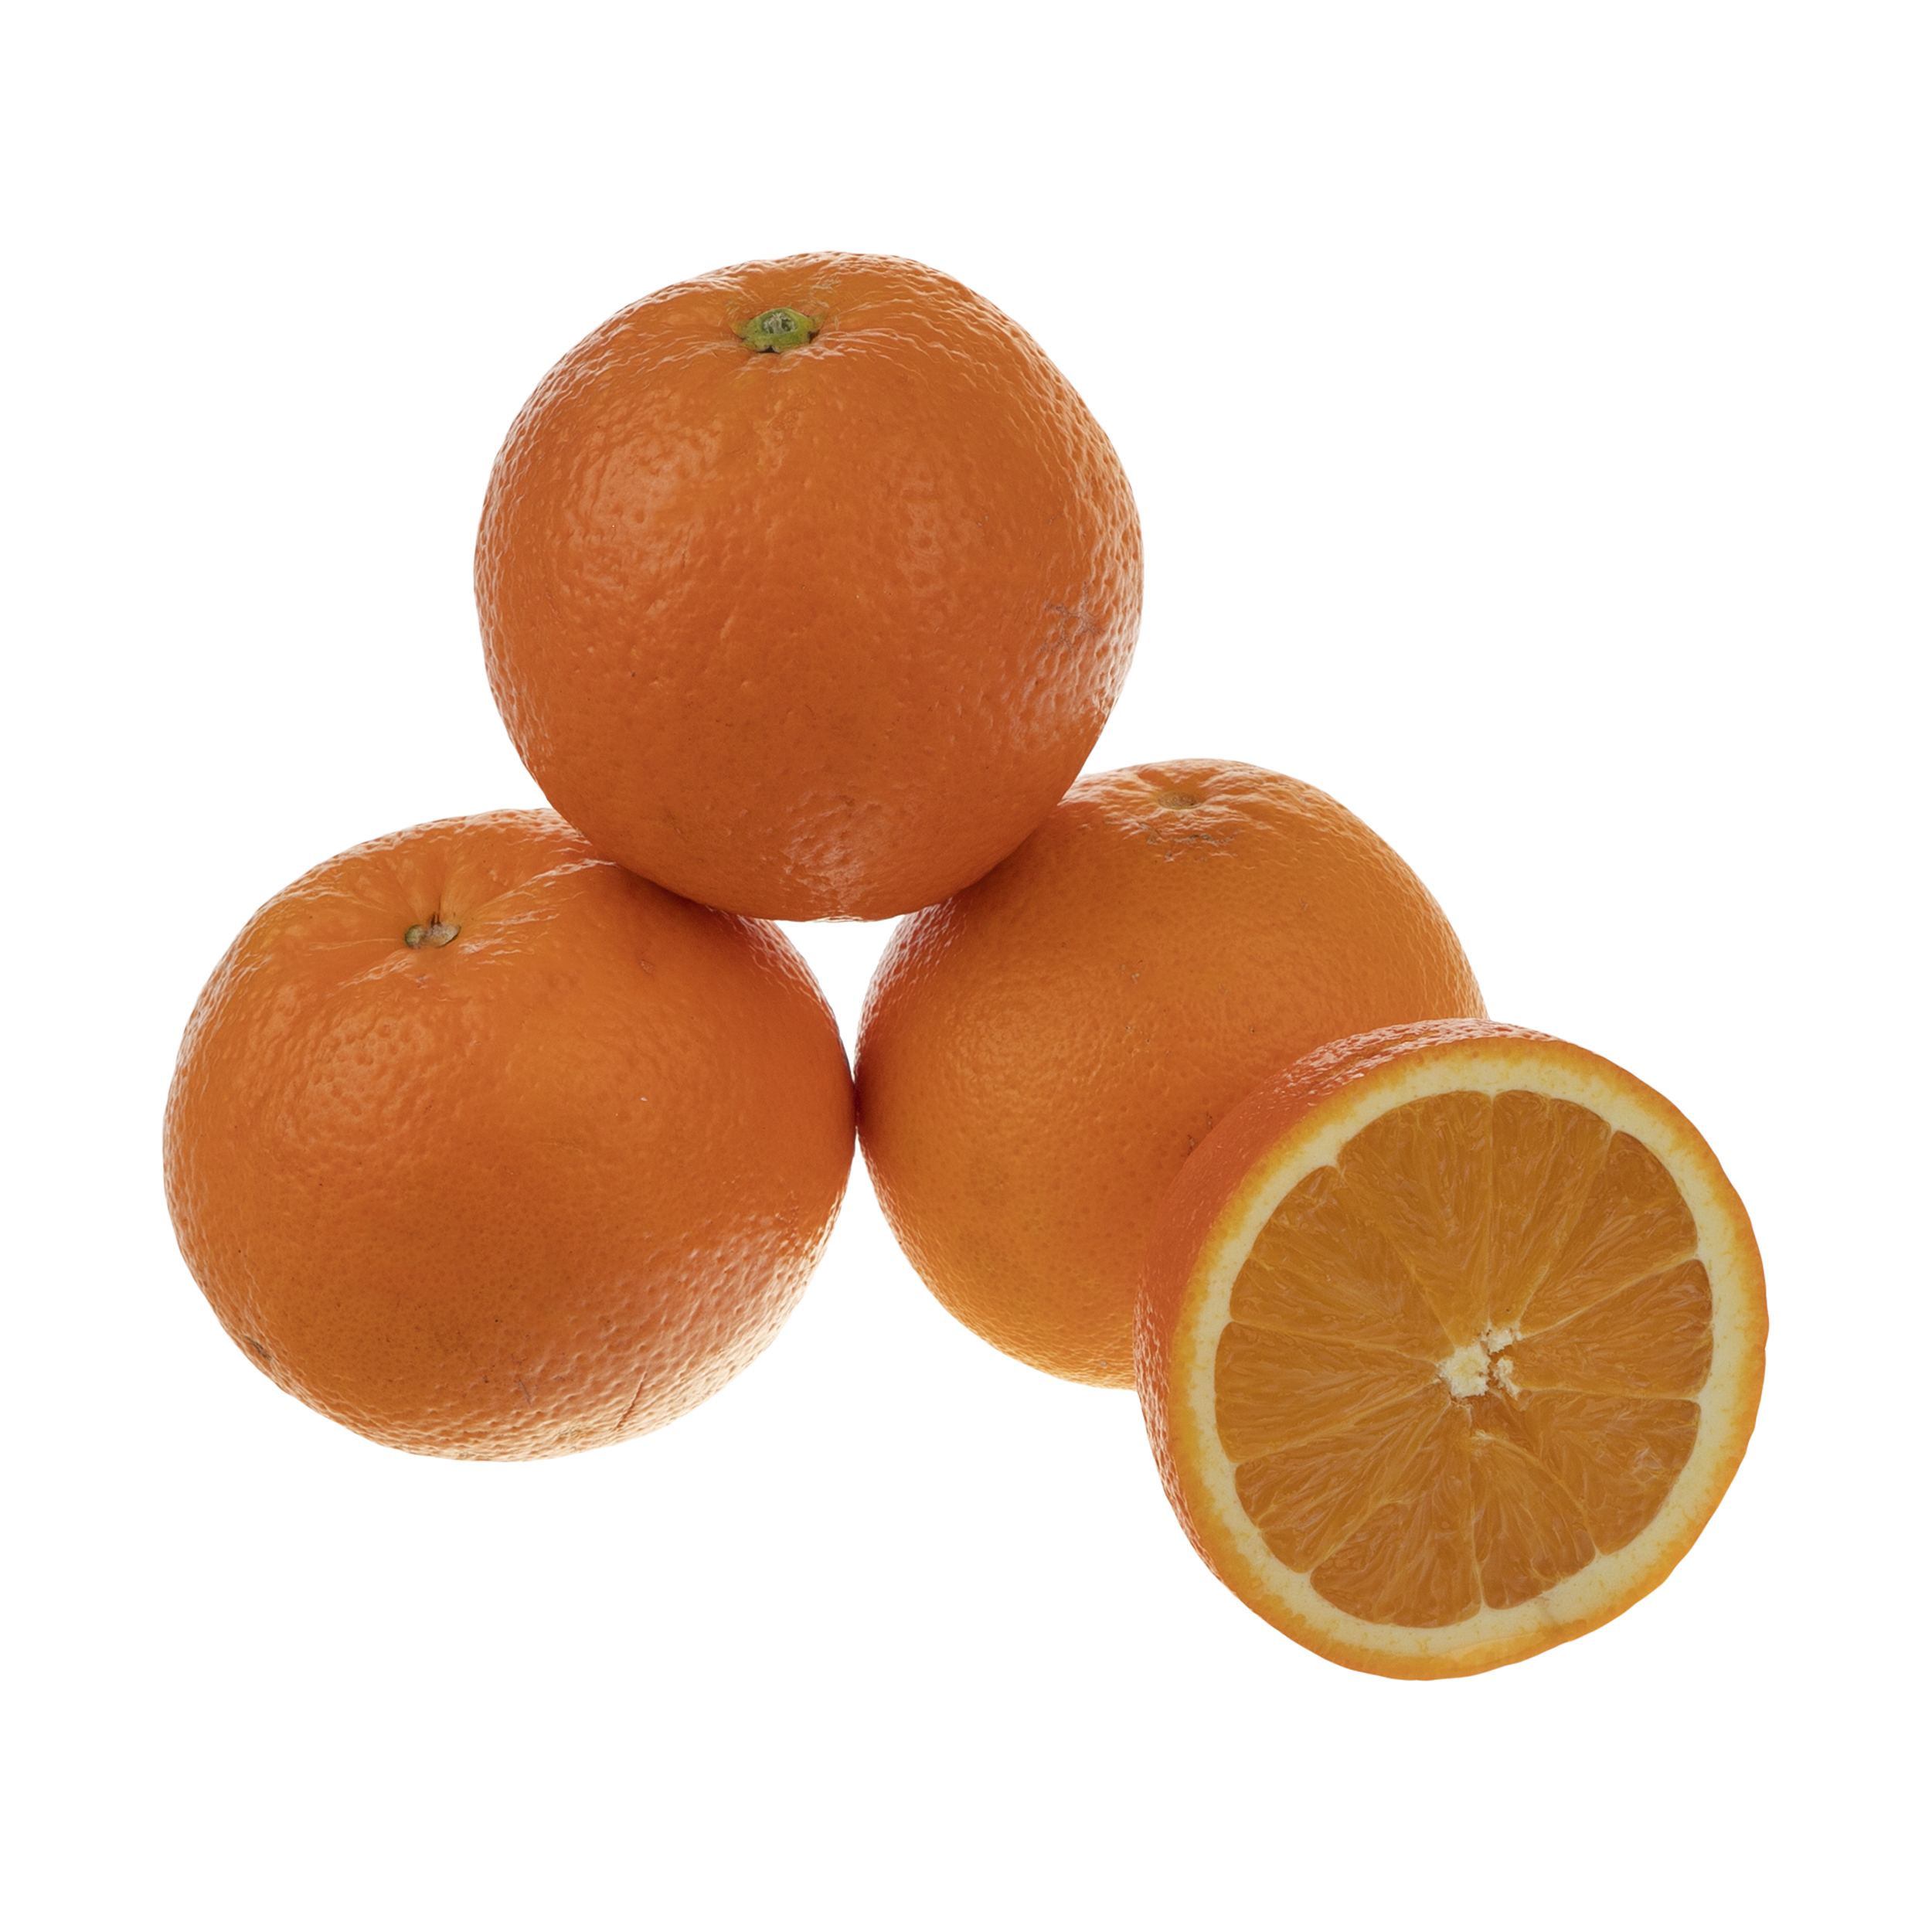 پرتقال تامسون شمال درجه 1 سبزیکو - 1 کیلوگرم